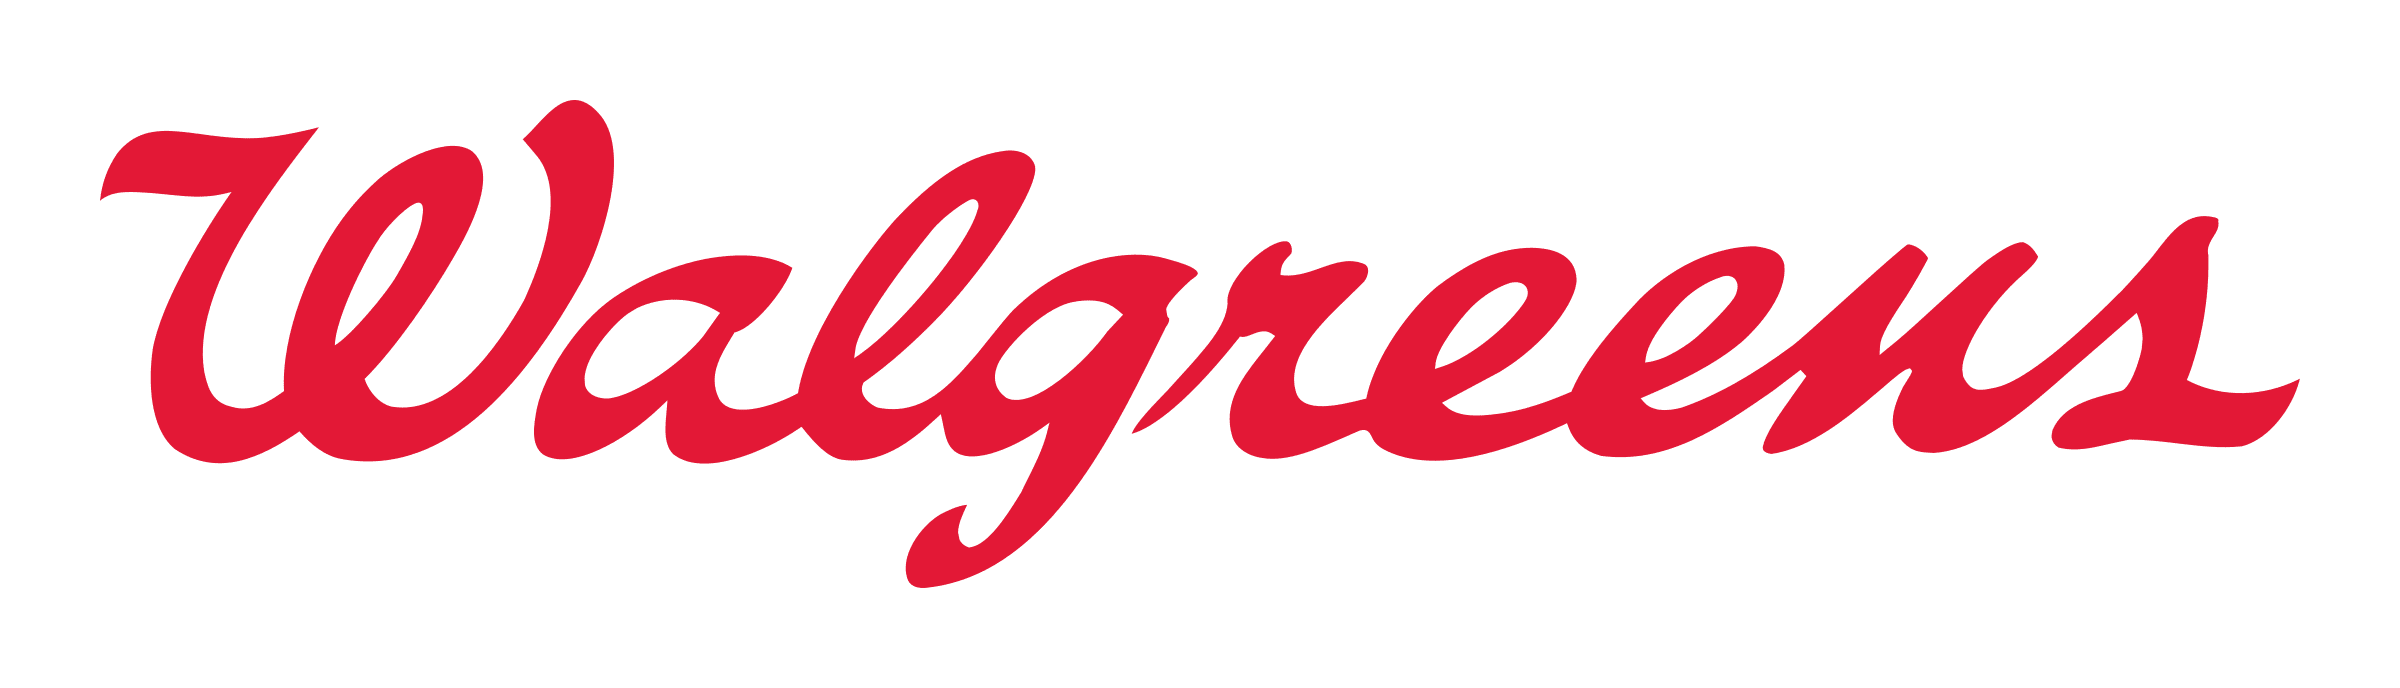 Image result for walgreens logo